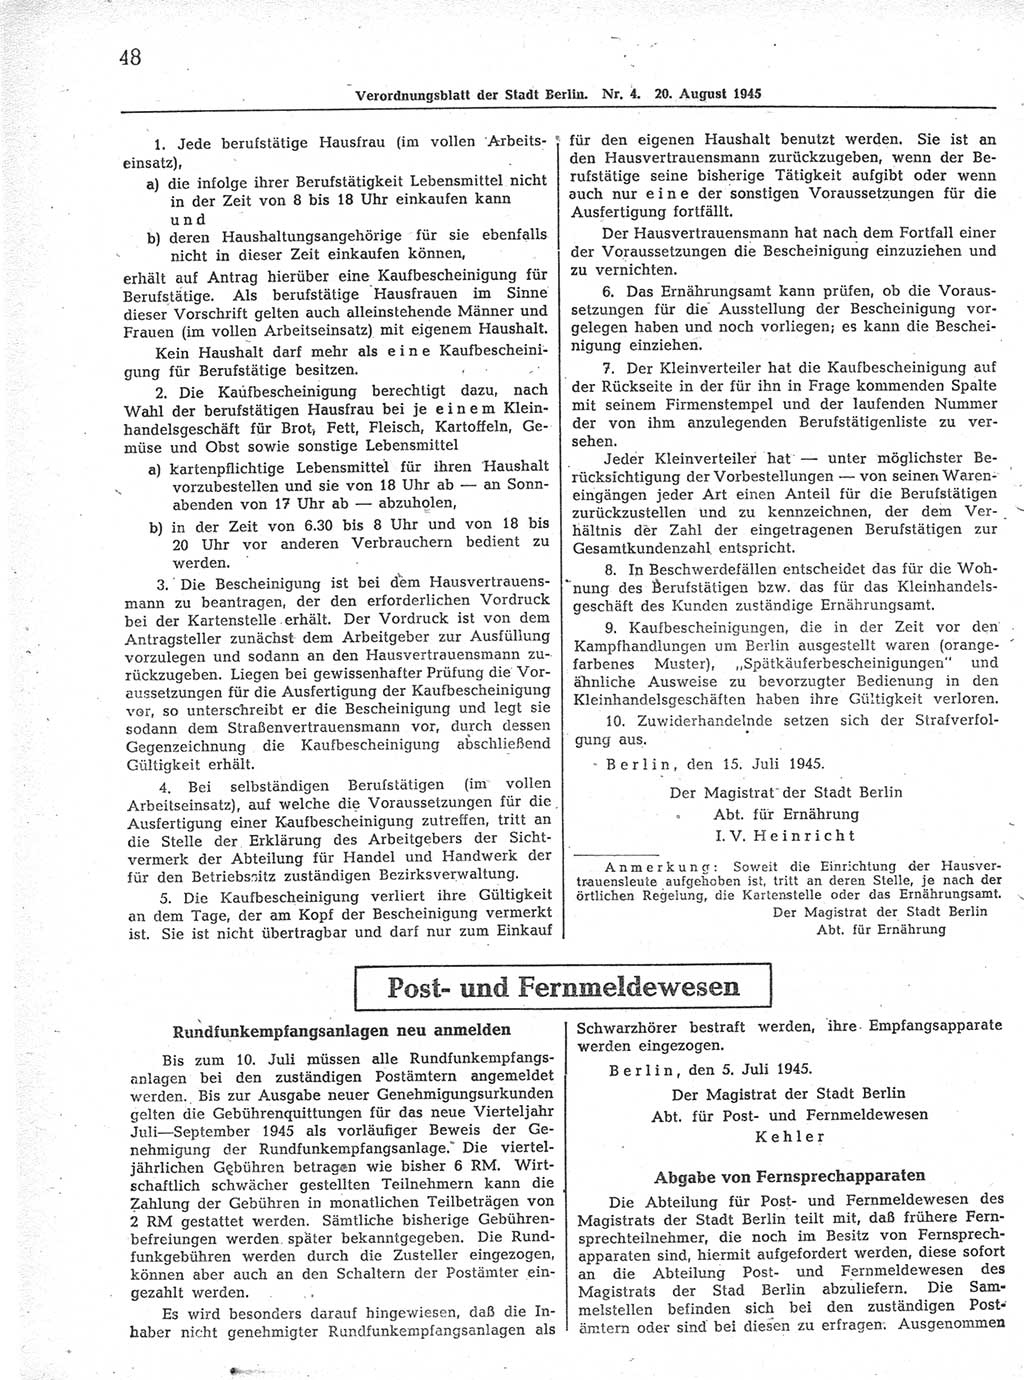 Verordnungsblatt (VOBl.) der Stadt Berlin 1945, Seite 48 (VOBl. Bln. 1945, S. 48)